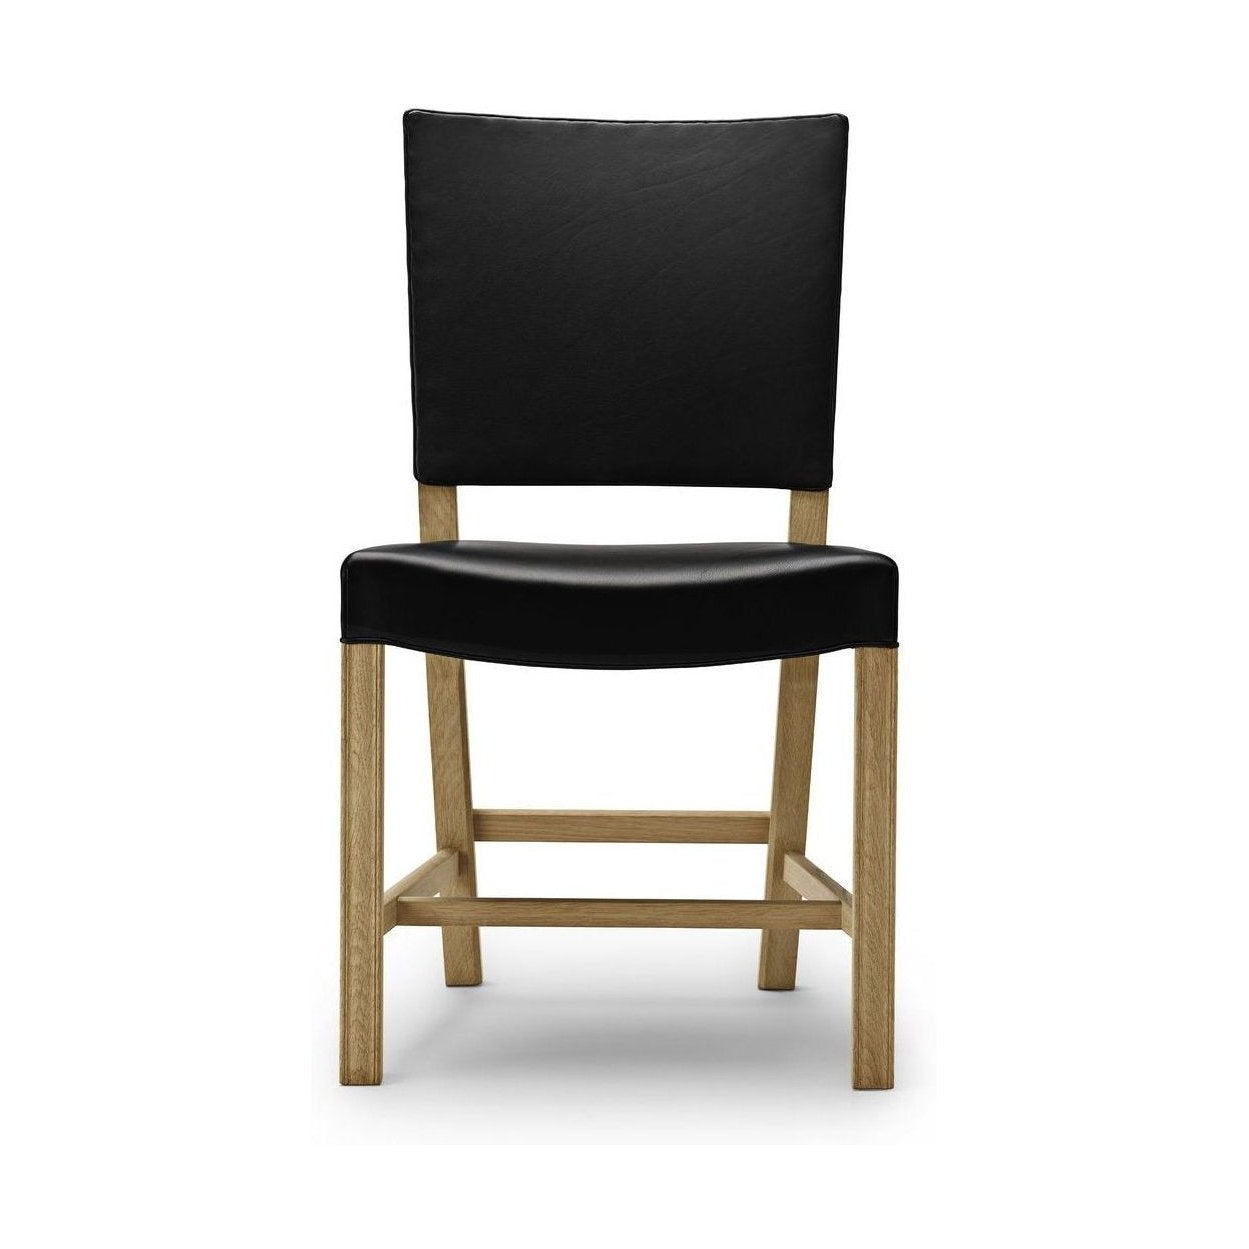 Carl Hansen KK39490 liten rød stol, eik såp/svart skinn